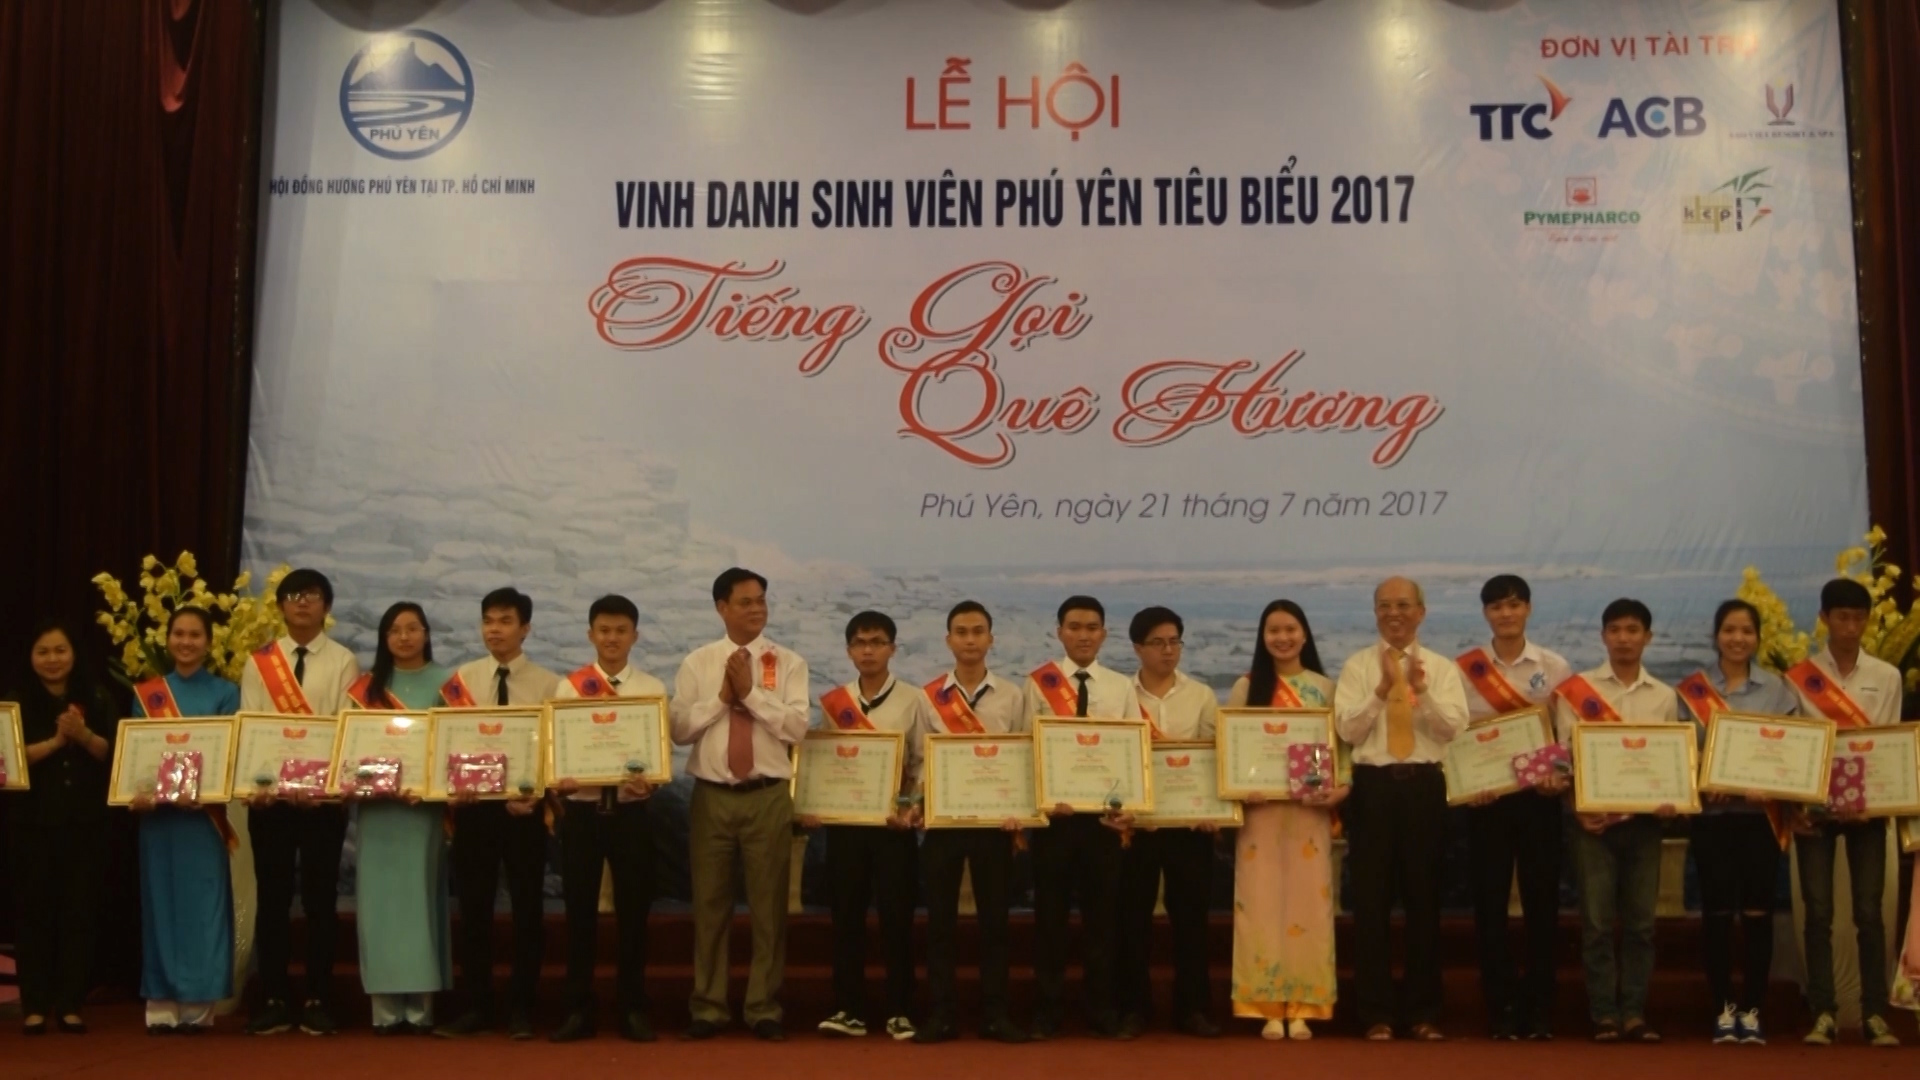 Đồng chí Huỳnh Tấn Việt, Ủy viên Trung ương Đảng, Bí thư Tỉnh ủy, Chủ tịch HĐND tỉnh trao thưởng cho sinh viên Phú Yên tiêu biểu